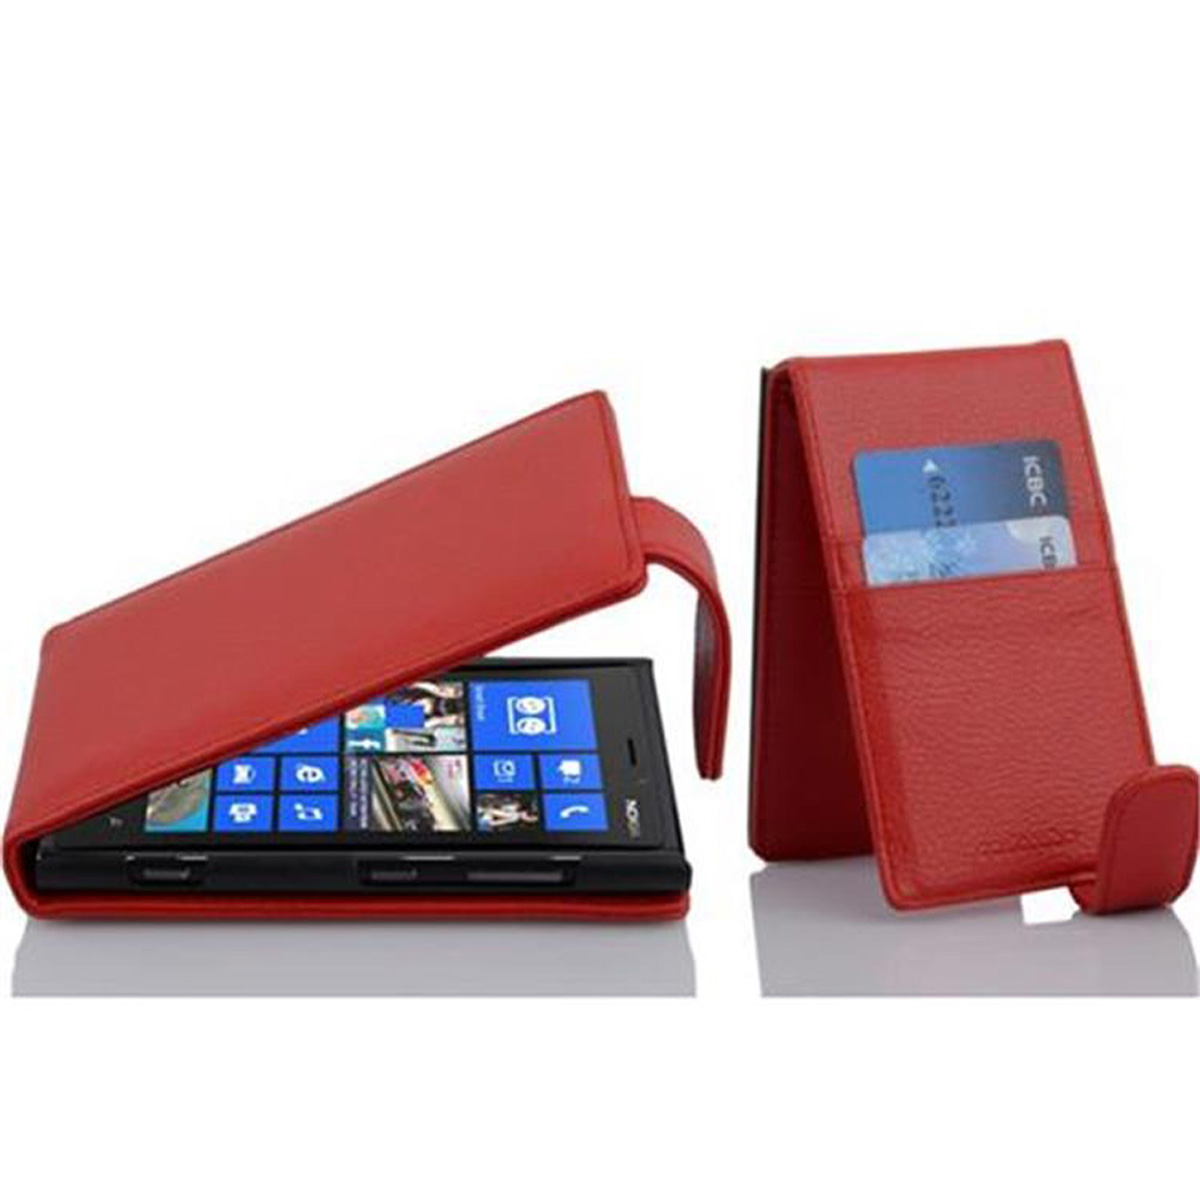 CADORABO Schutzhülle im Flip Style, Lumia 920, Nokia, INFERNO ROT Flip Cover